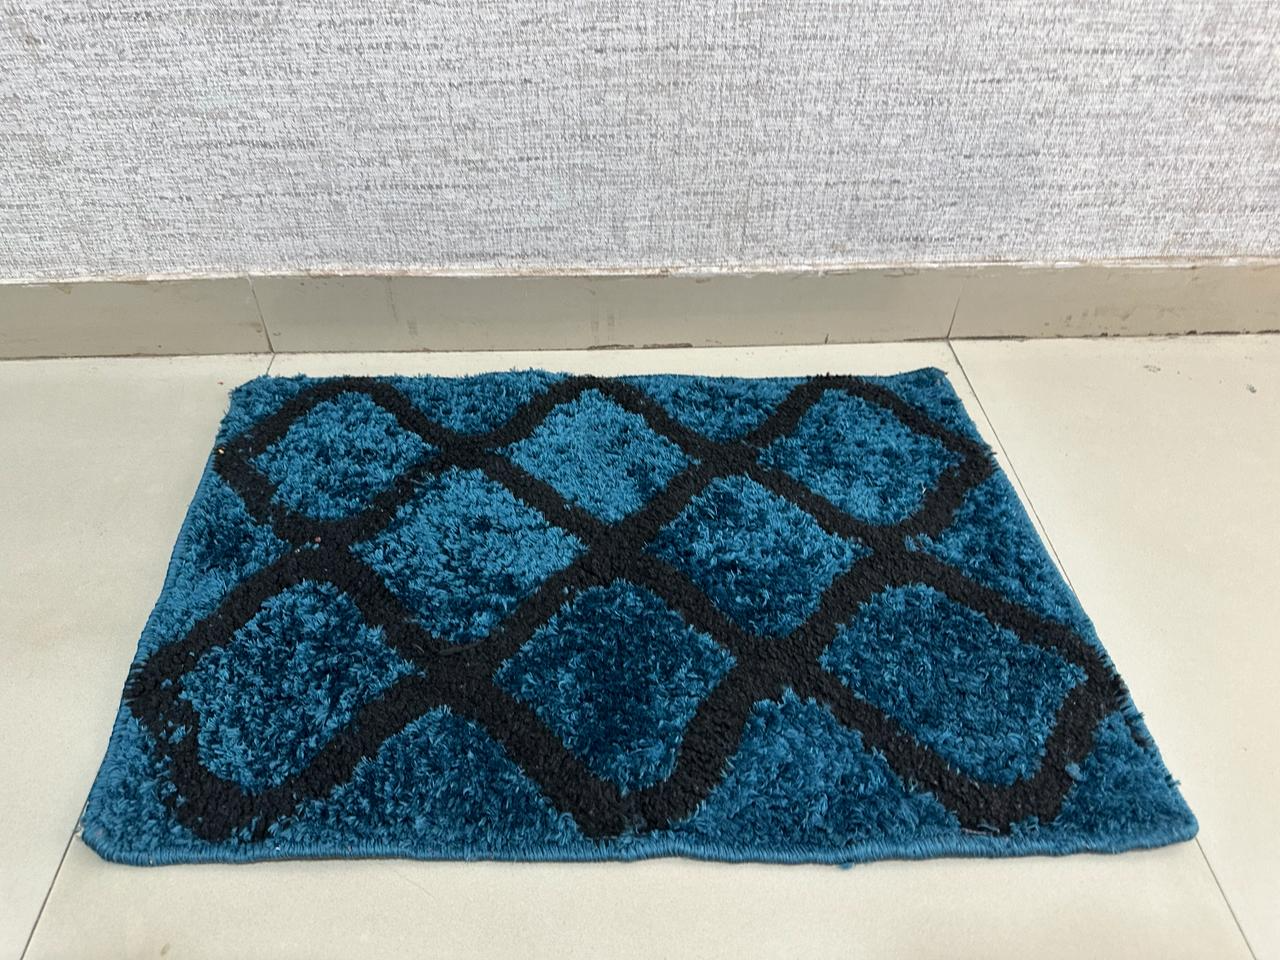 Eakstar | Floor mat |Towel Design